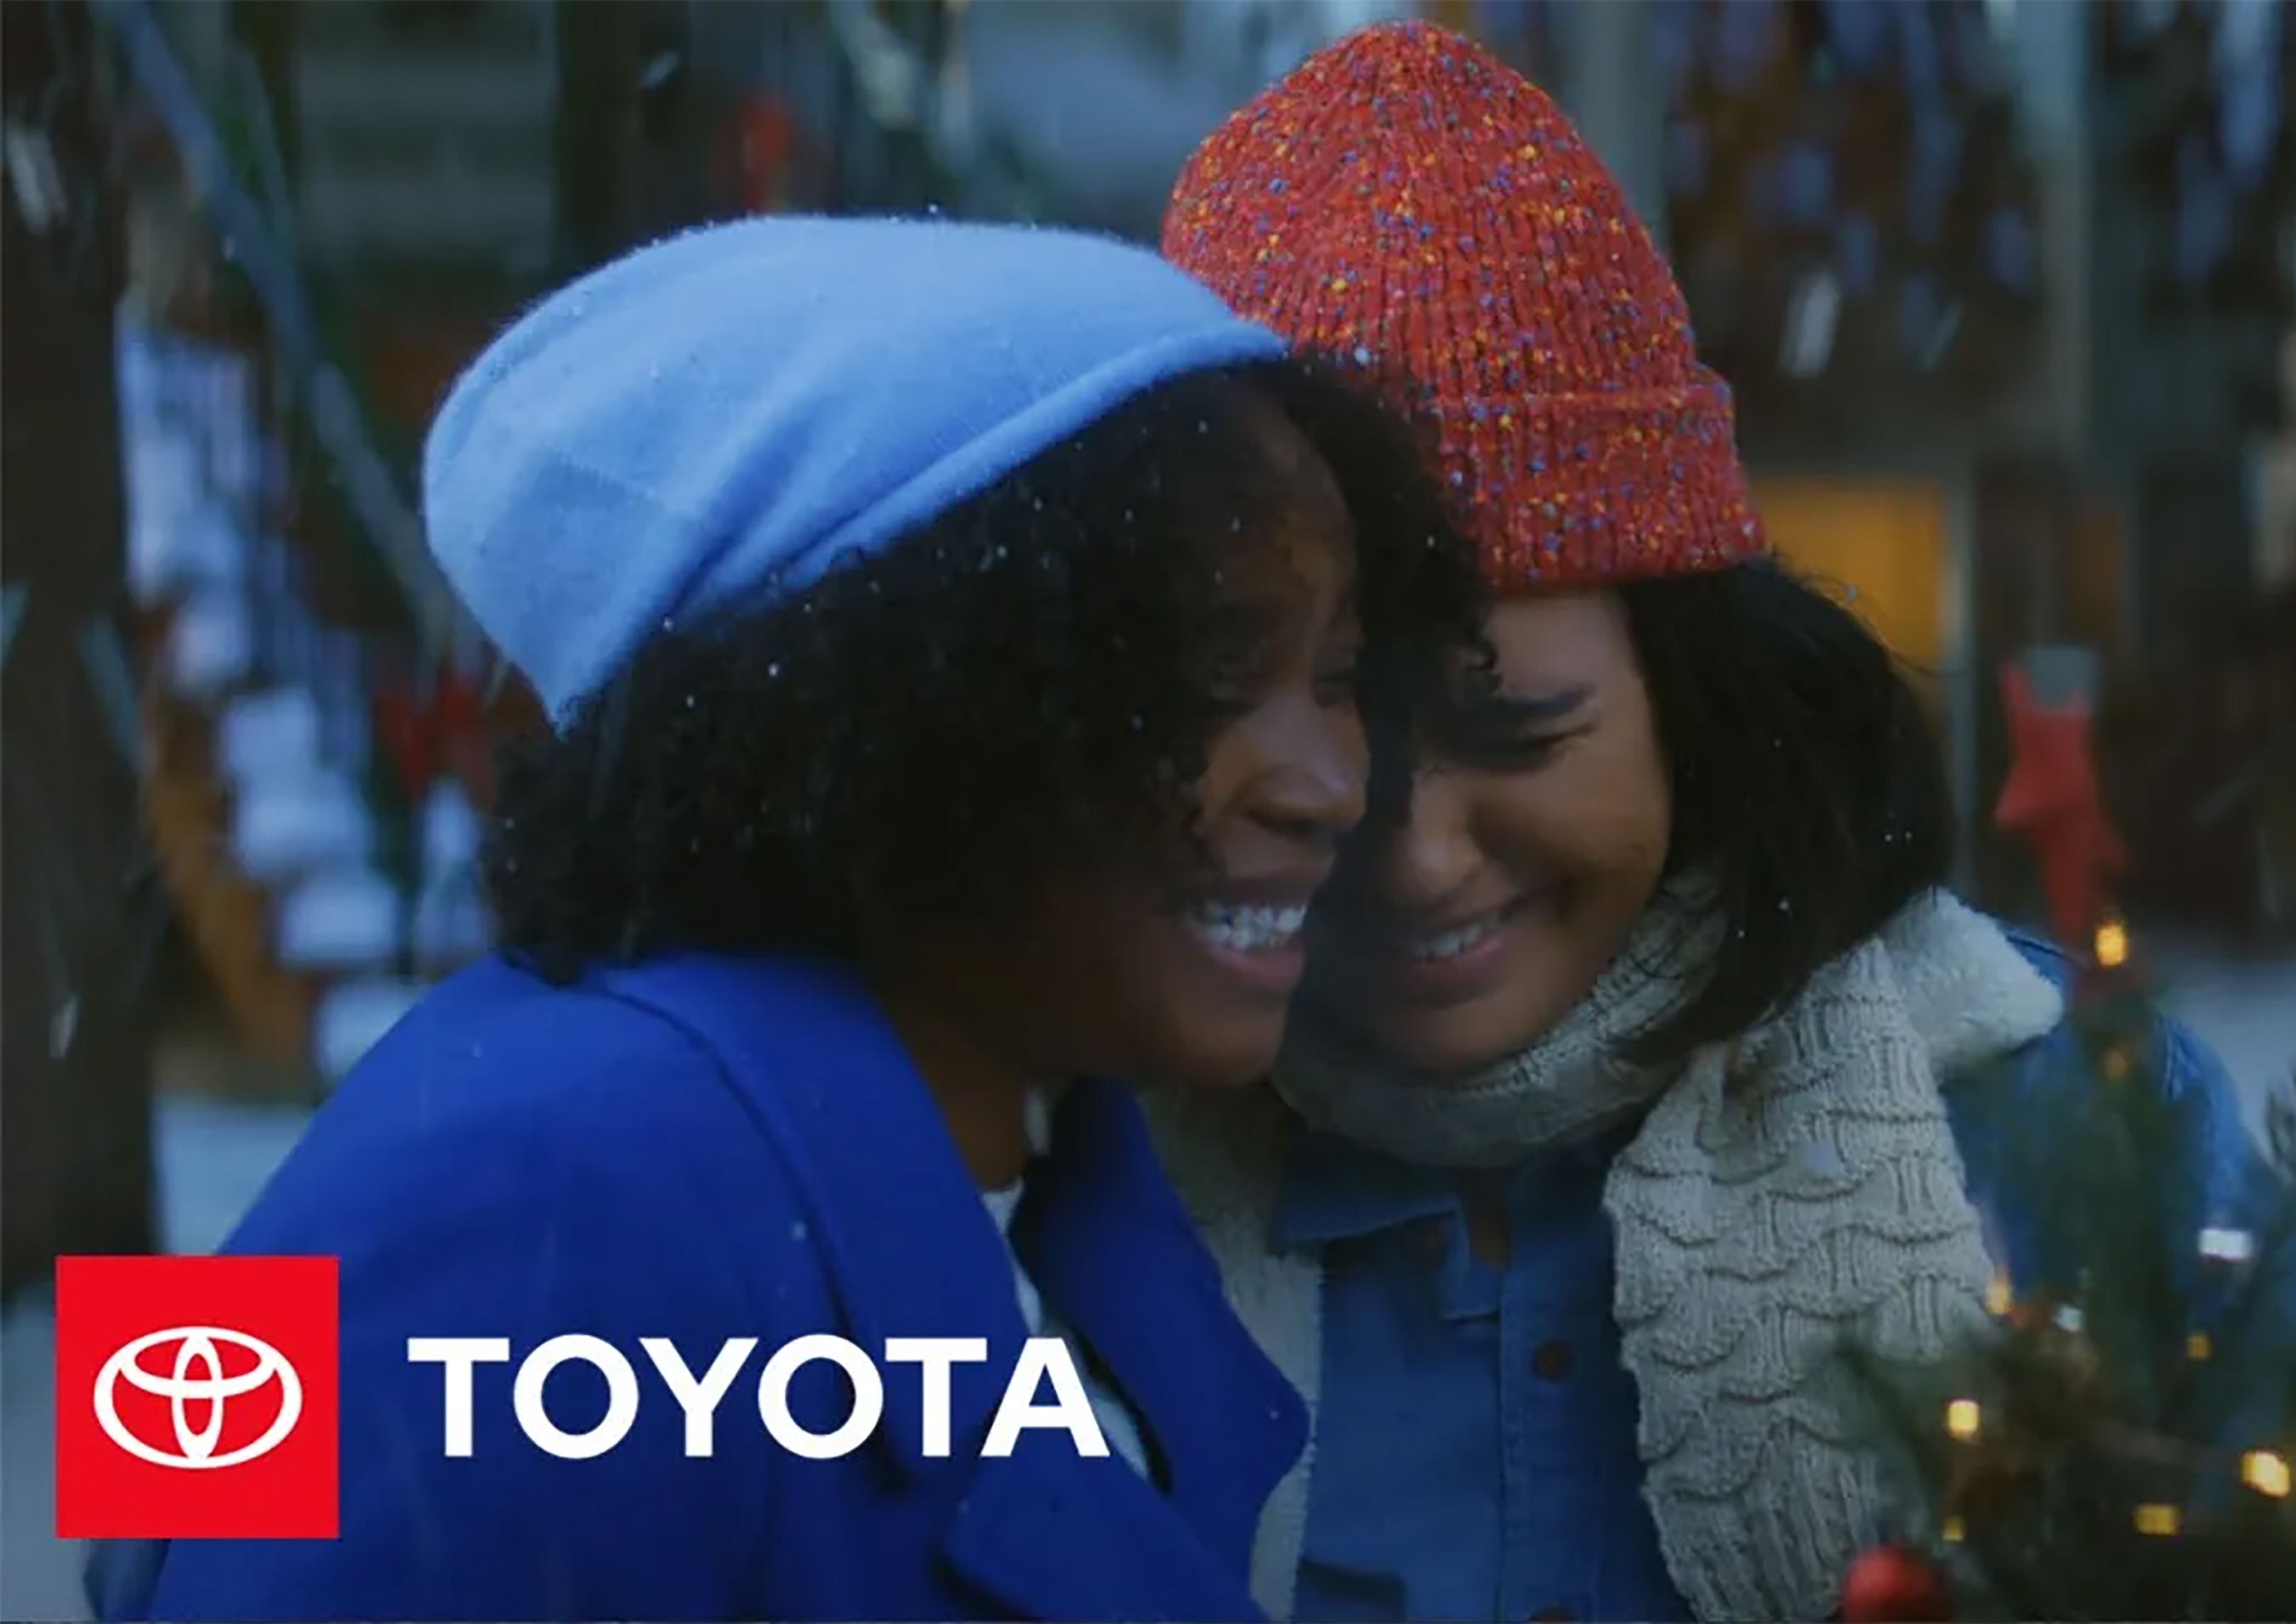 Play Video: El anuncio de la temporada navideña “Like No One’s Watching” imparte un mensaje sobre el compartir la bondad, desarrollado por Saatchi & Saatchi.